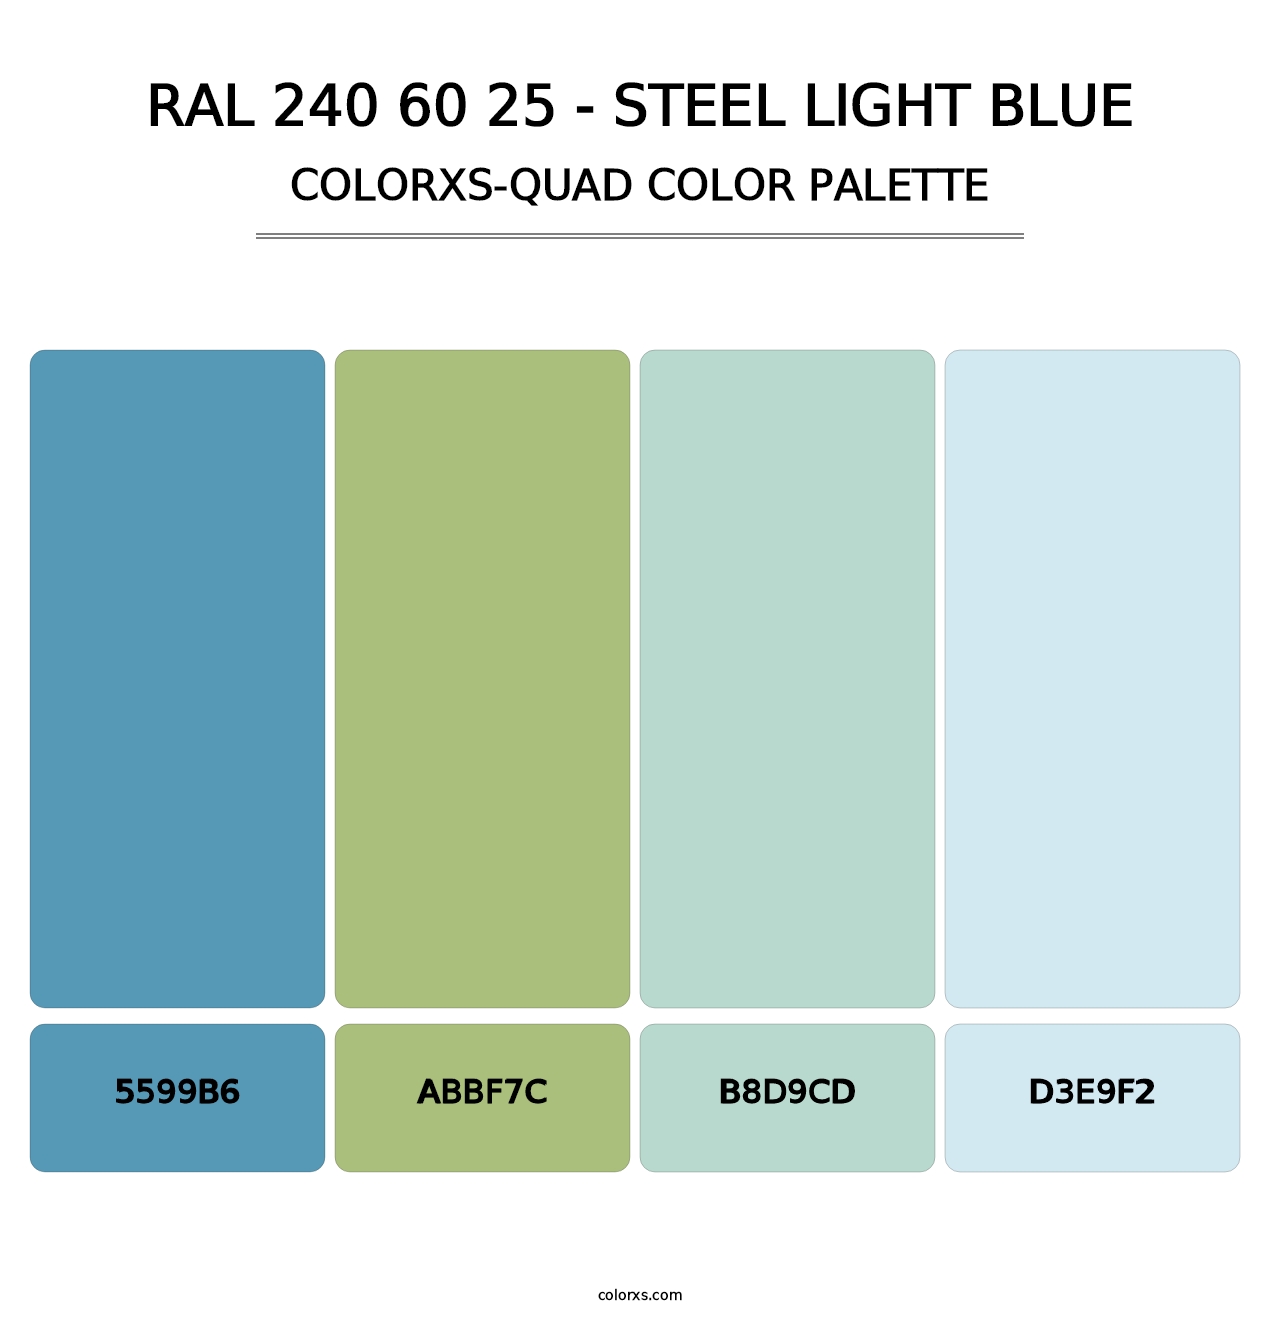 RAL 240 60 25 - Steel Light Blue - Colorxs Quad Palette